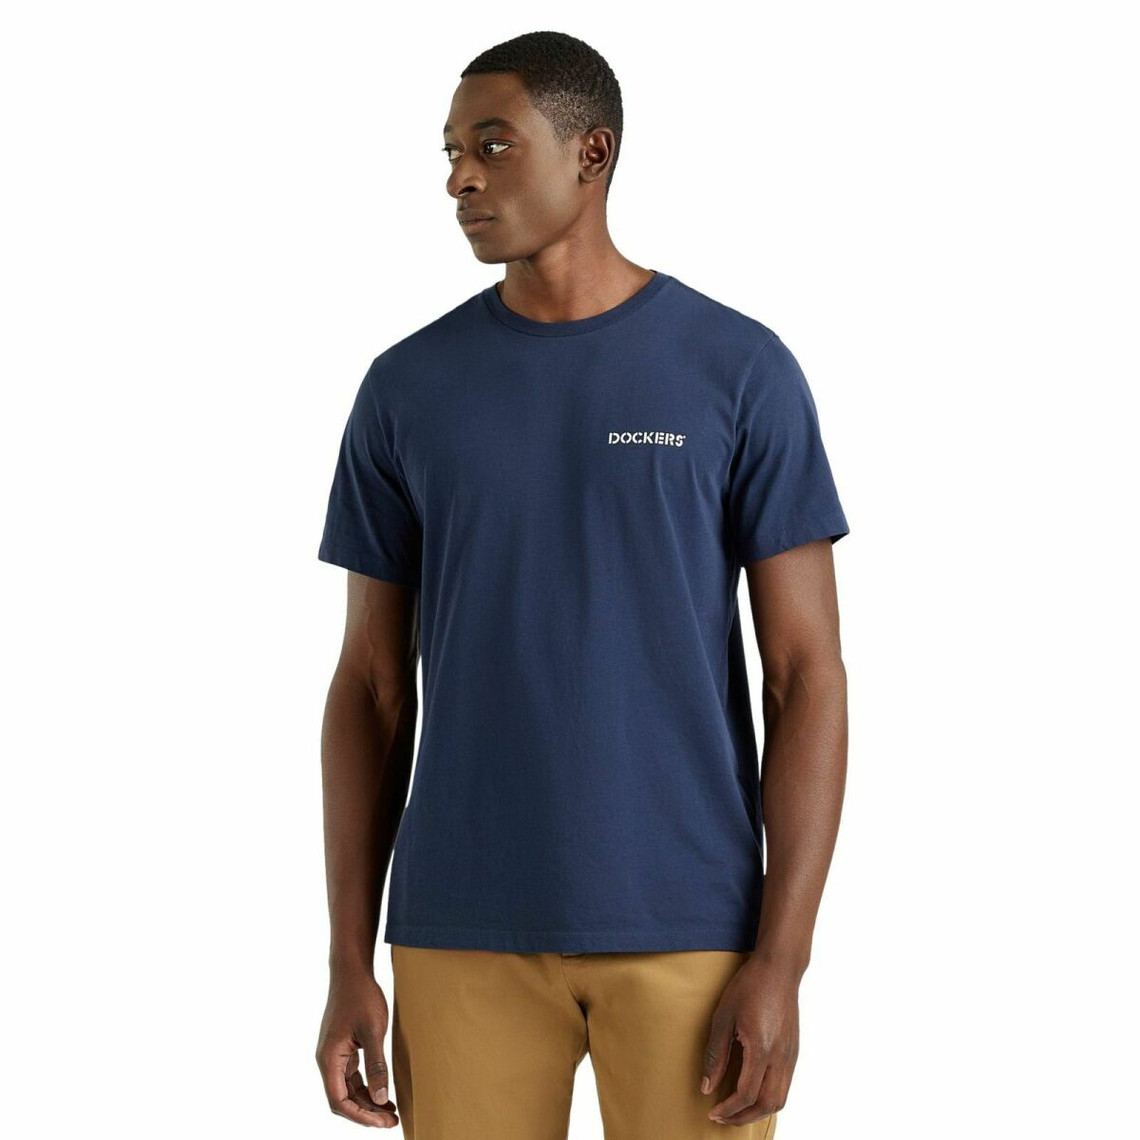 Tee-shirt manches courtes bleu marine en coton